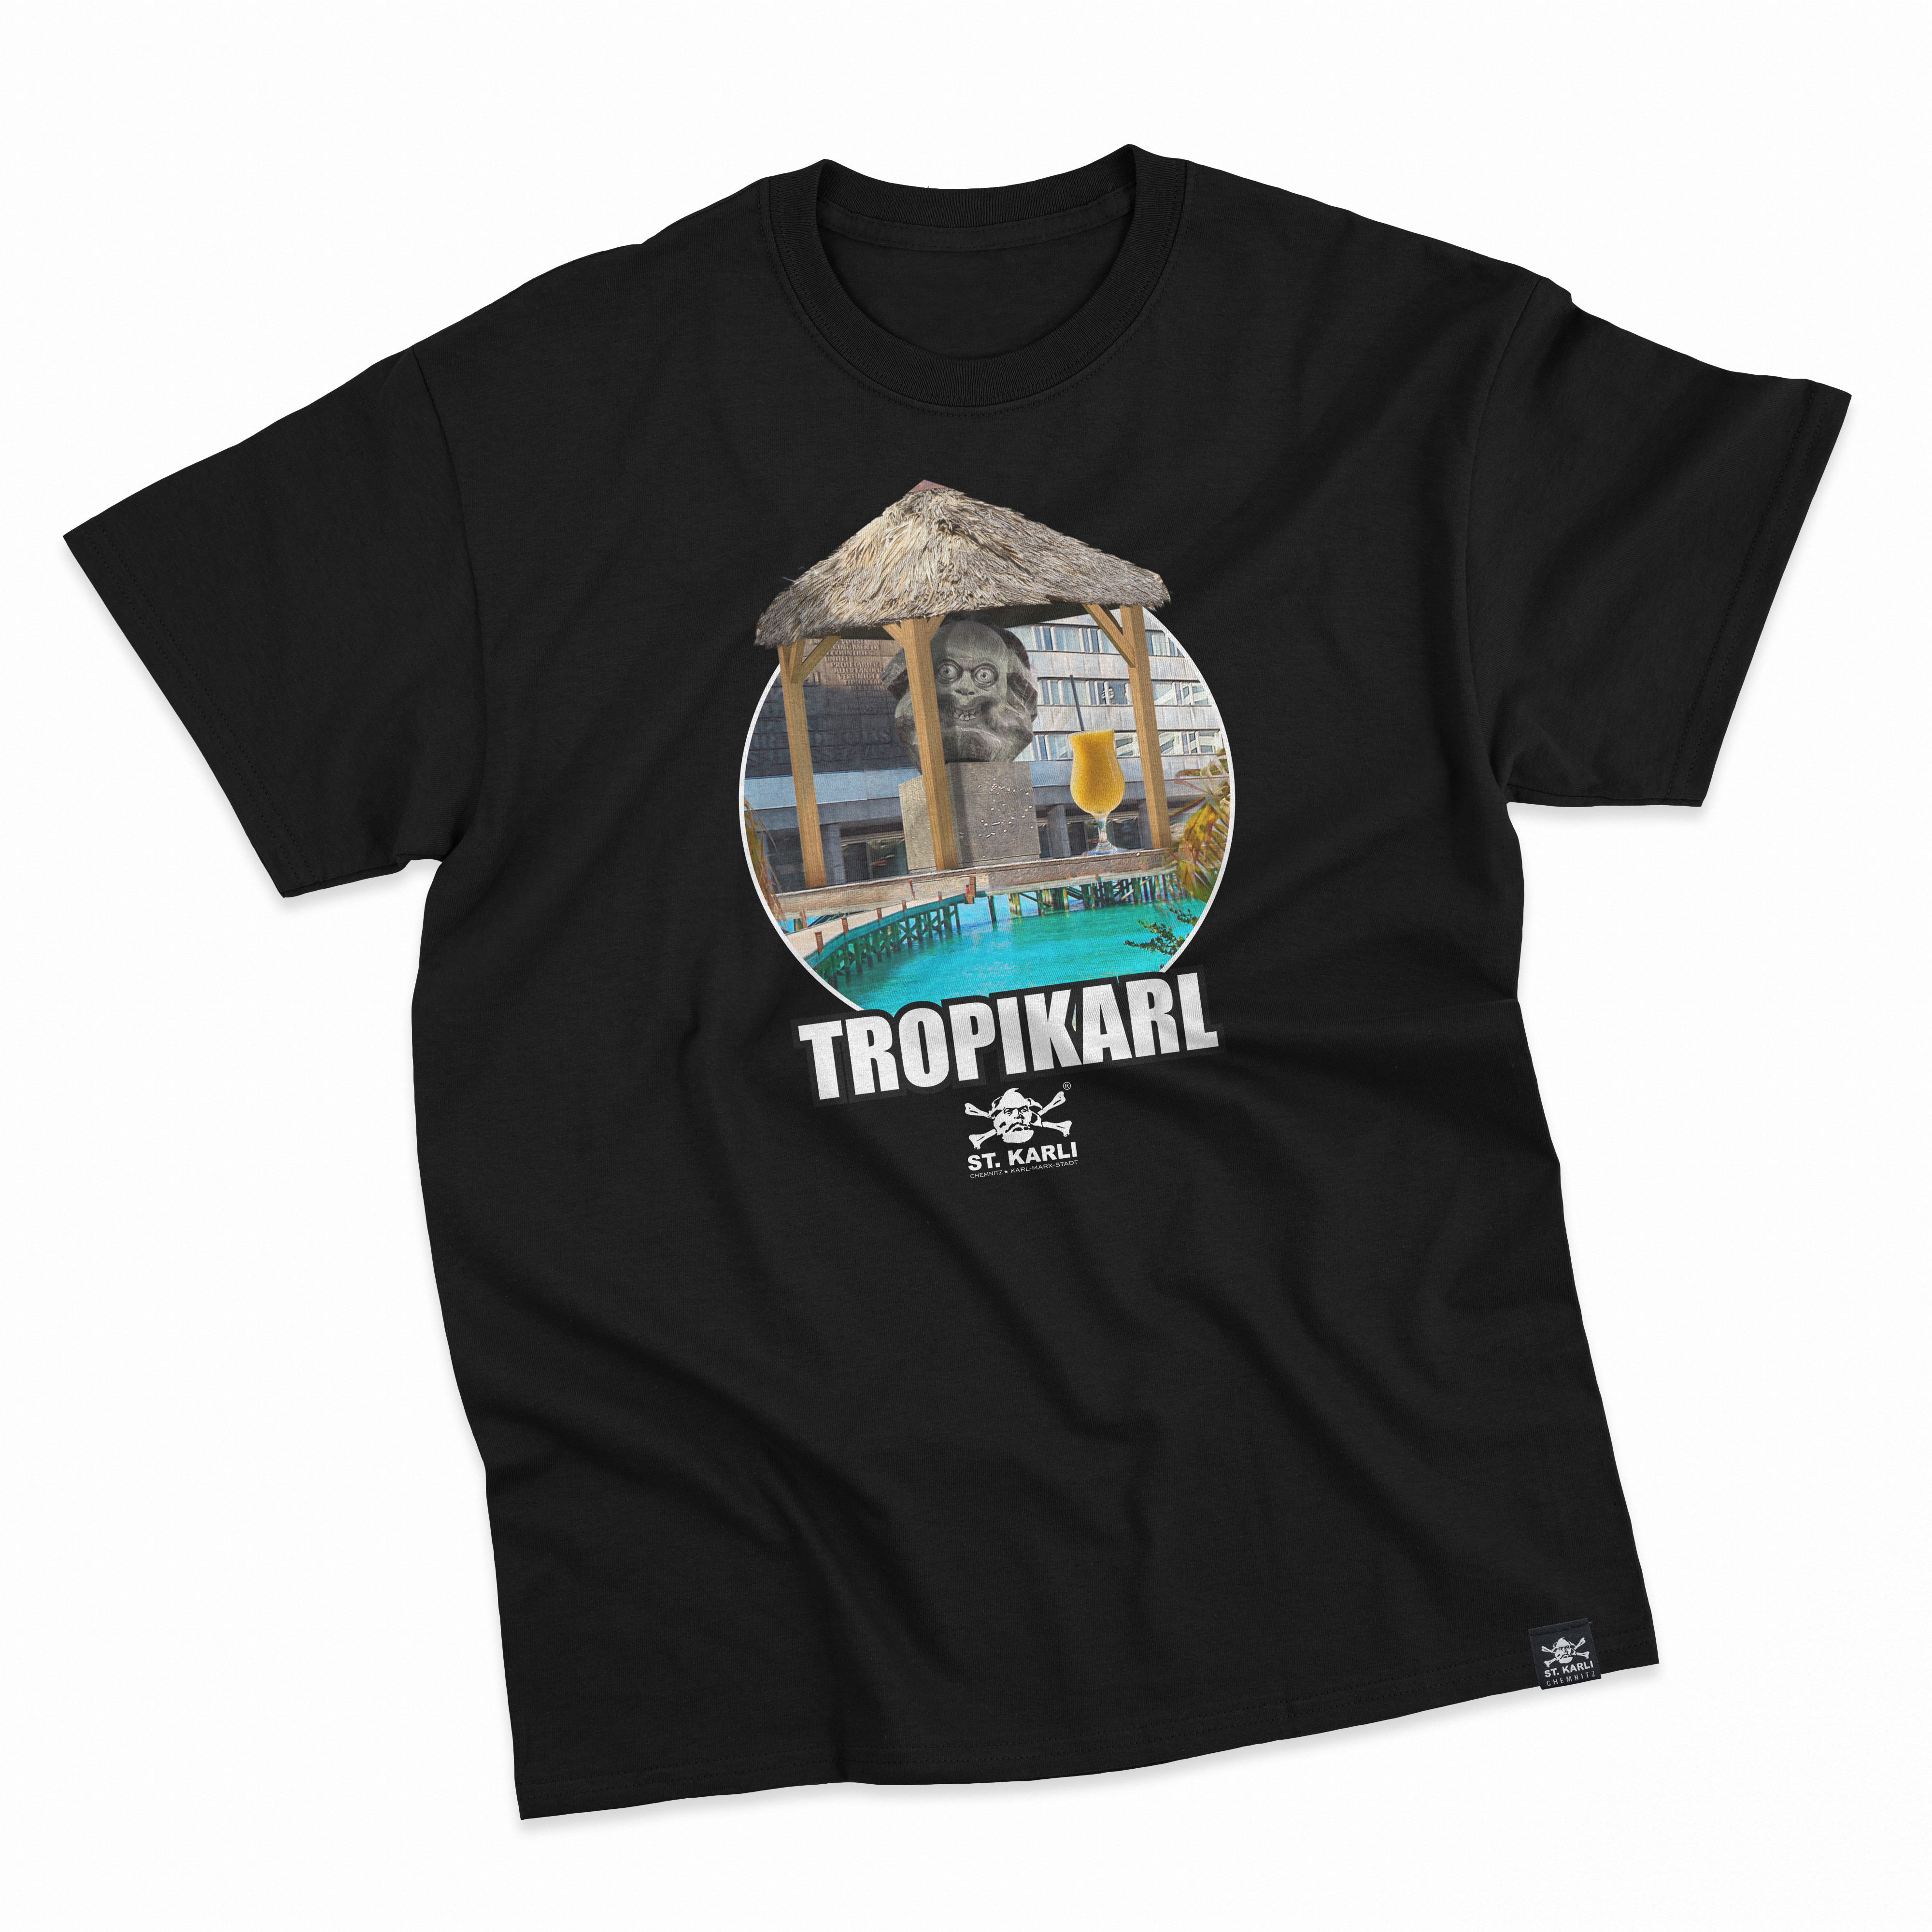 St. Karli T-Shirt "TROPIKARL"